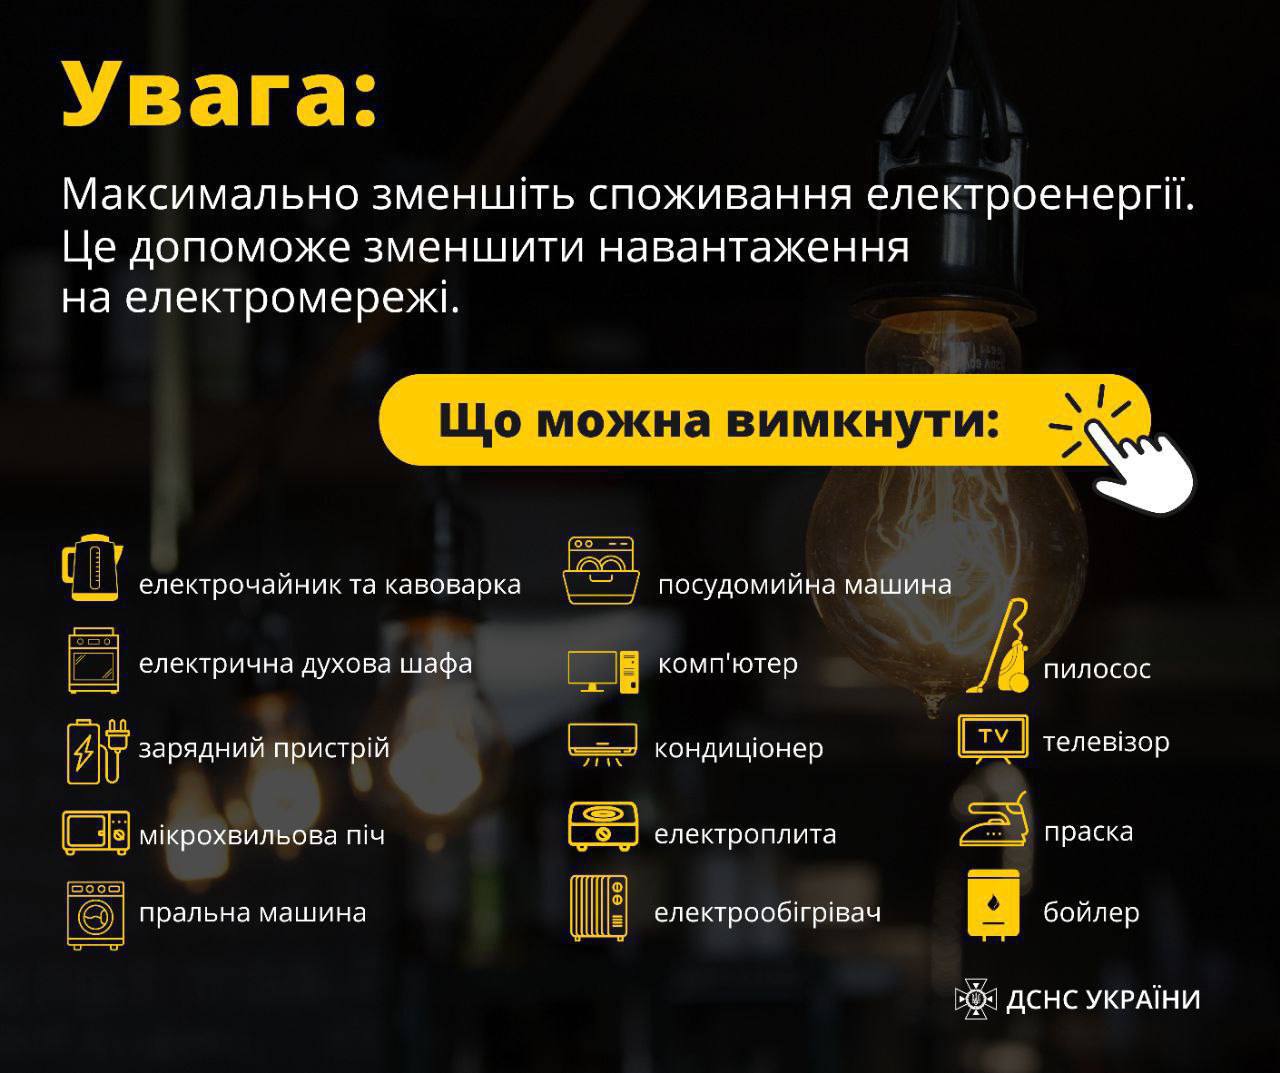 ❗️Через зростання споживання електроенергії в Київській області з 9:20 вимушено розпочалися тимчасові відключення